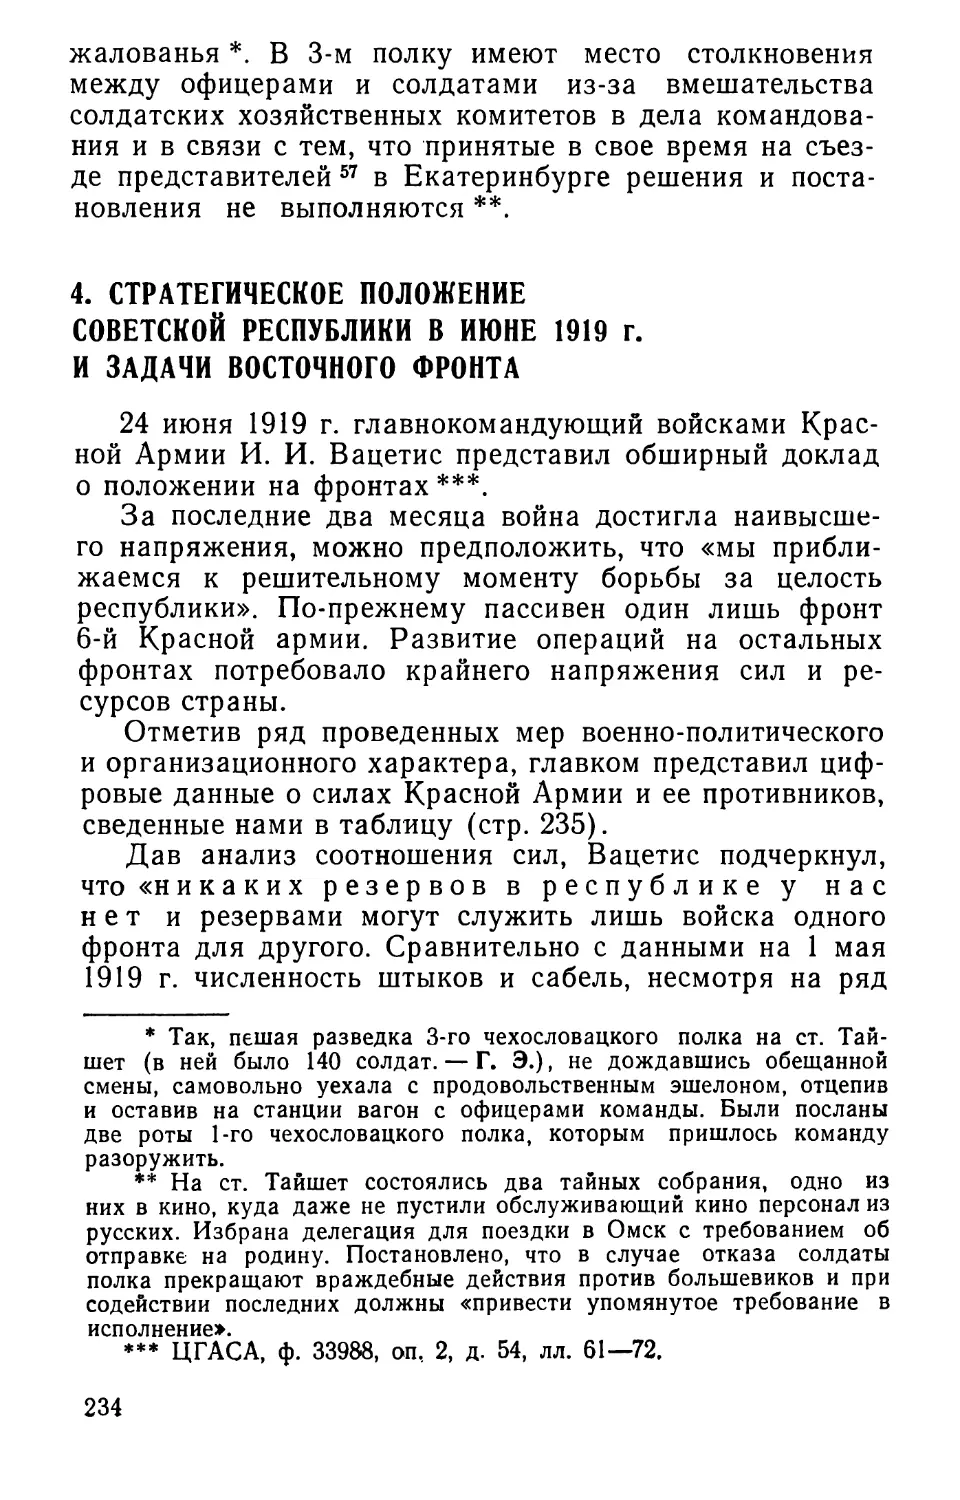 4. Стратегическое положение Советской республики в июне 1919 г. и задачи Восточного фронта